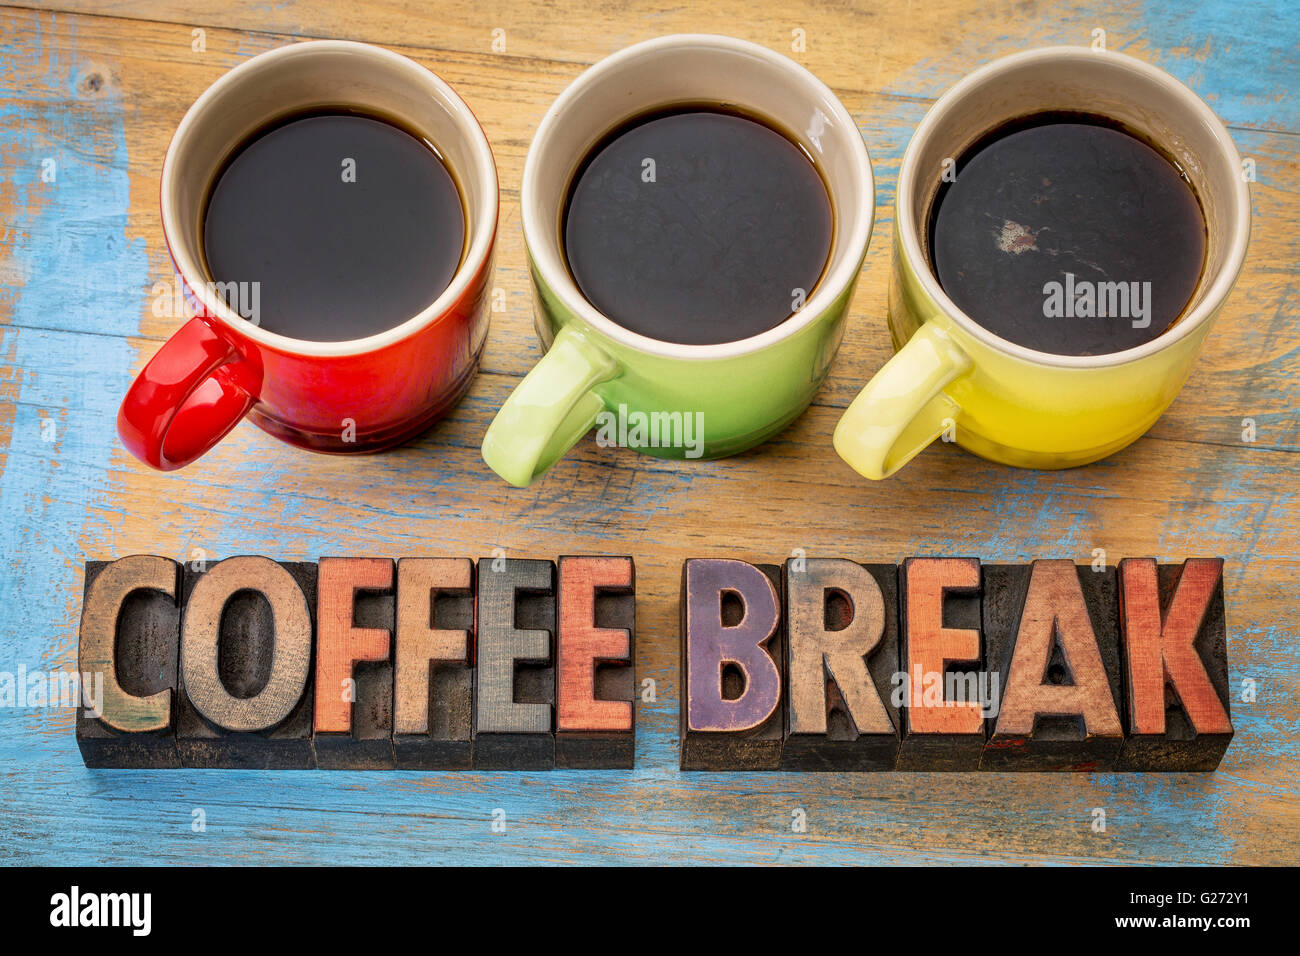 Pausa caffè banner in rilievografia vintage tipo di legno con tre tazze di caffè espresso Foto Stock